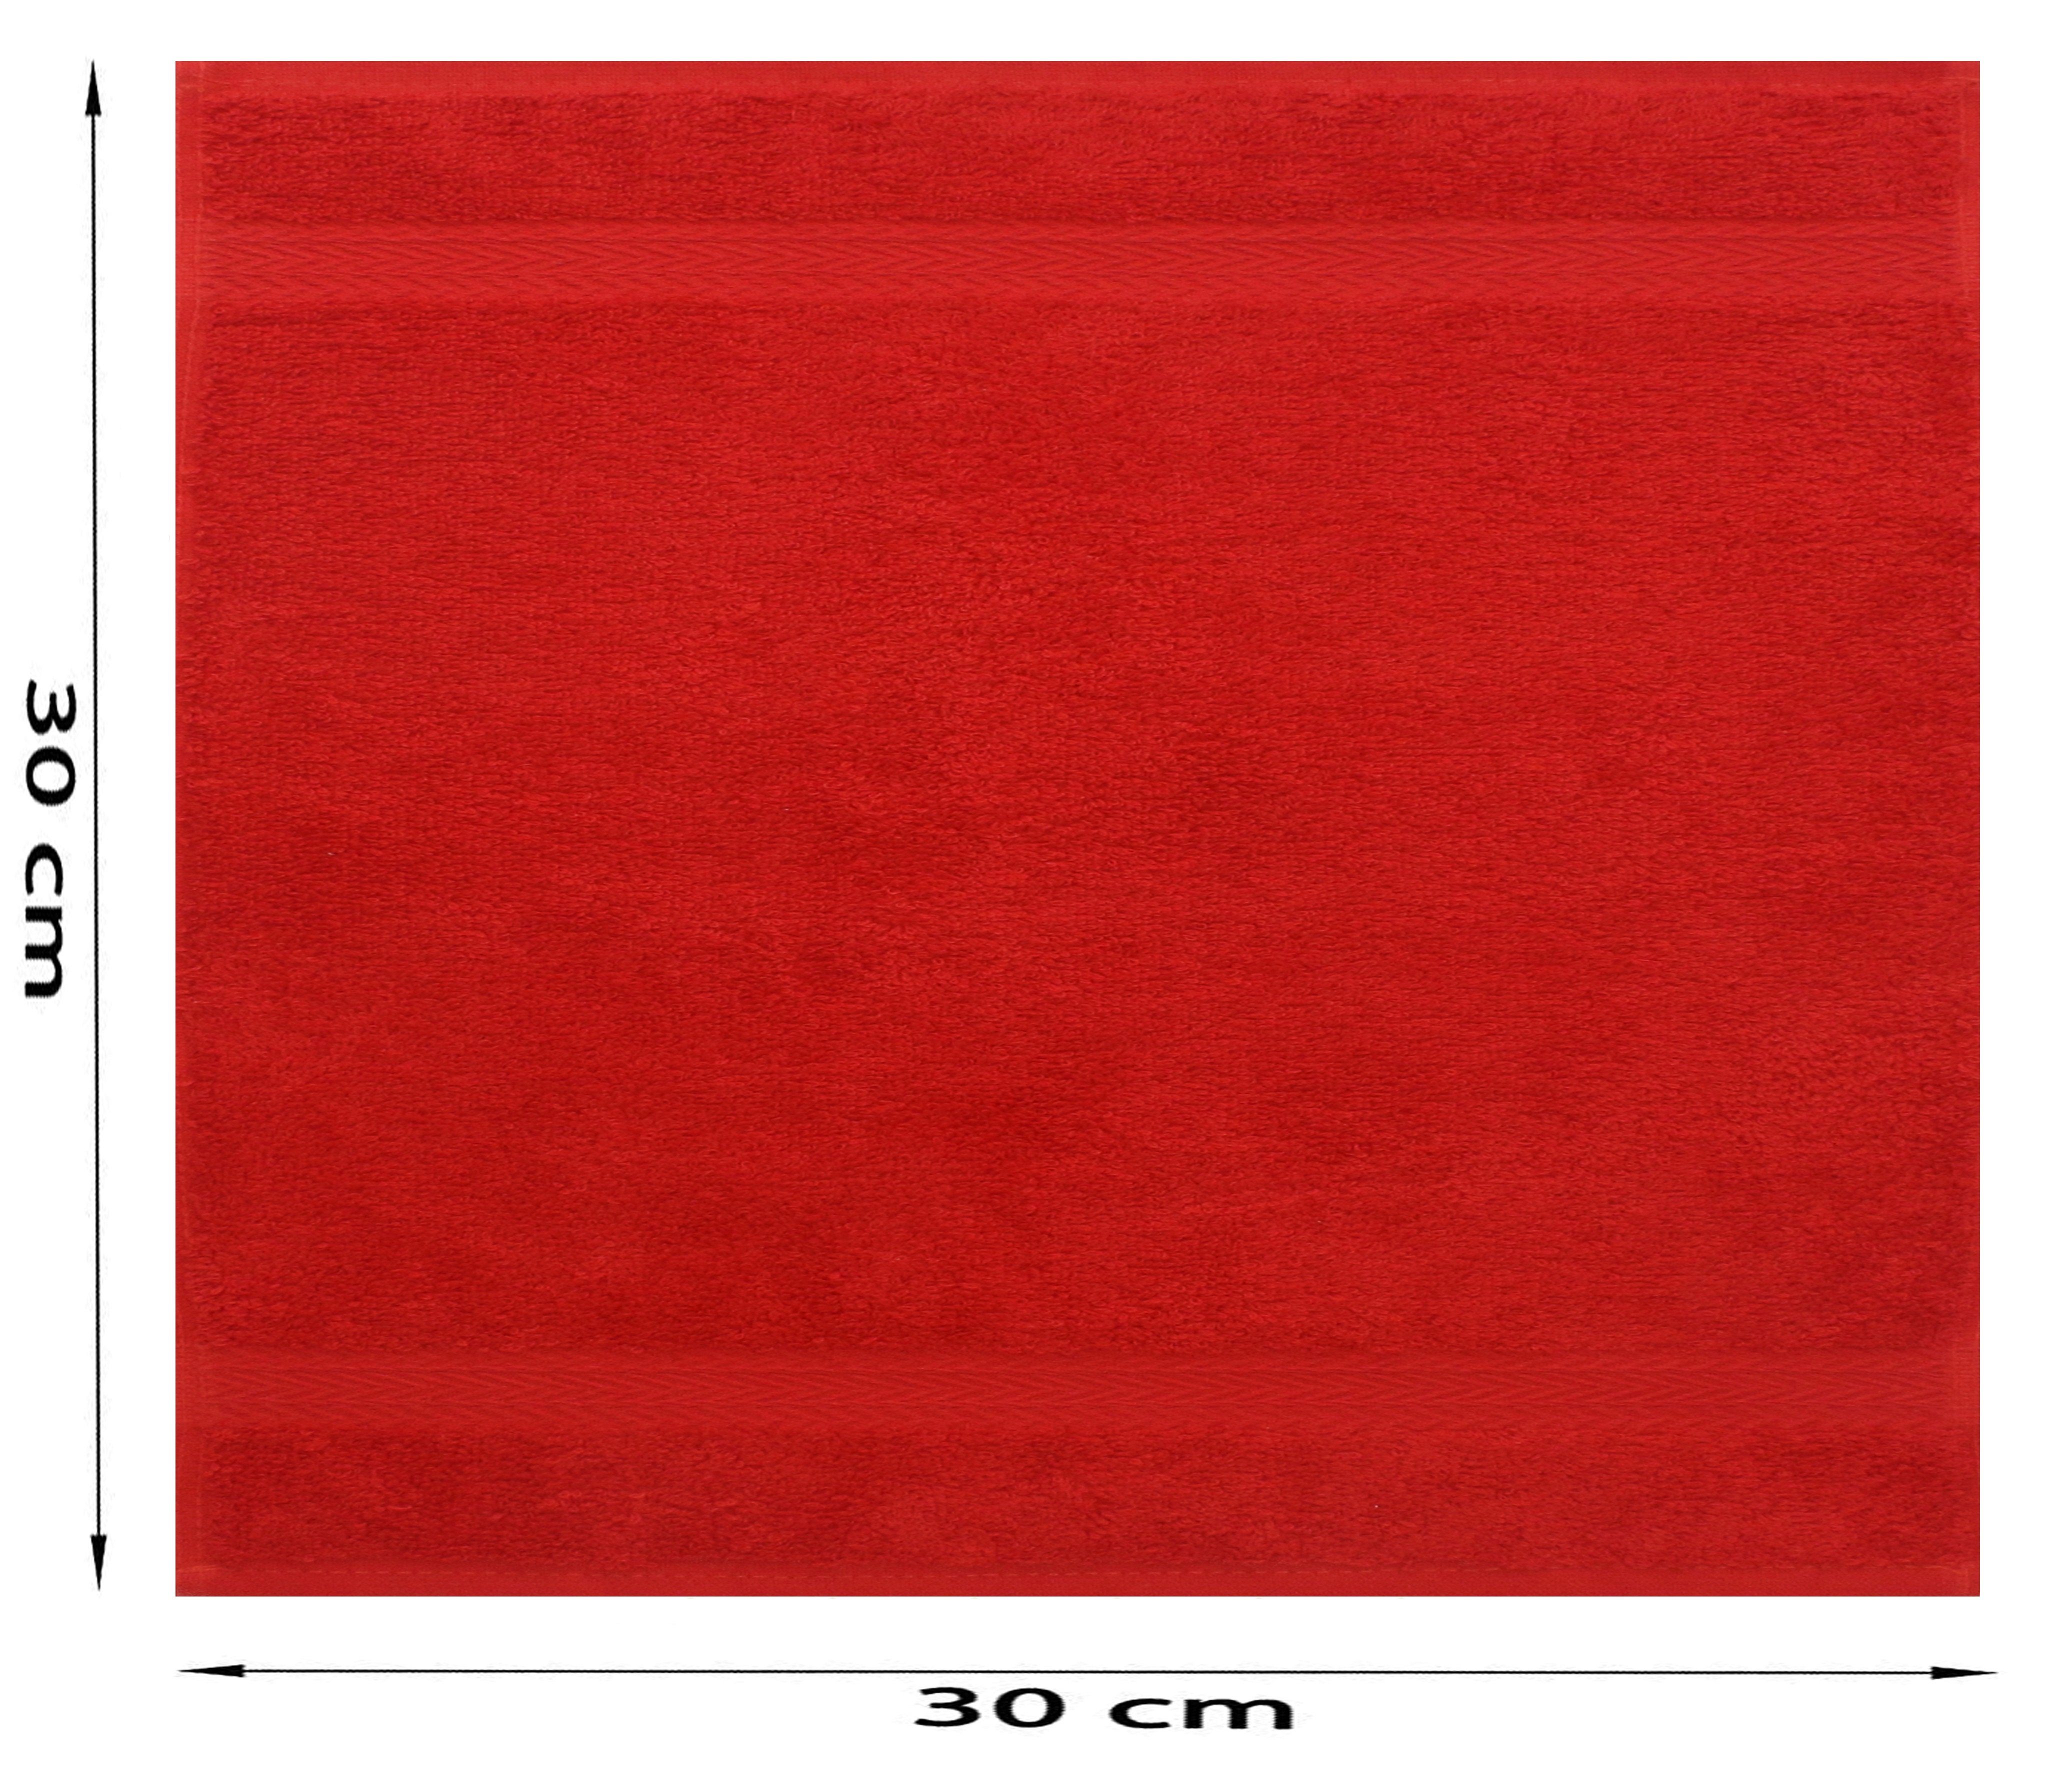 Seiftuch Seiflappen cm Betz 30x30 Baumwolle Set und Premium 100% 10 Seiftücher Farbe Stück orange rot